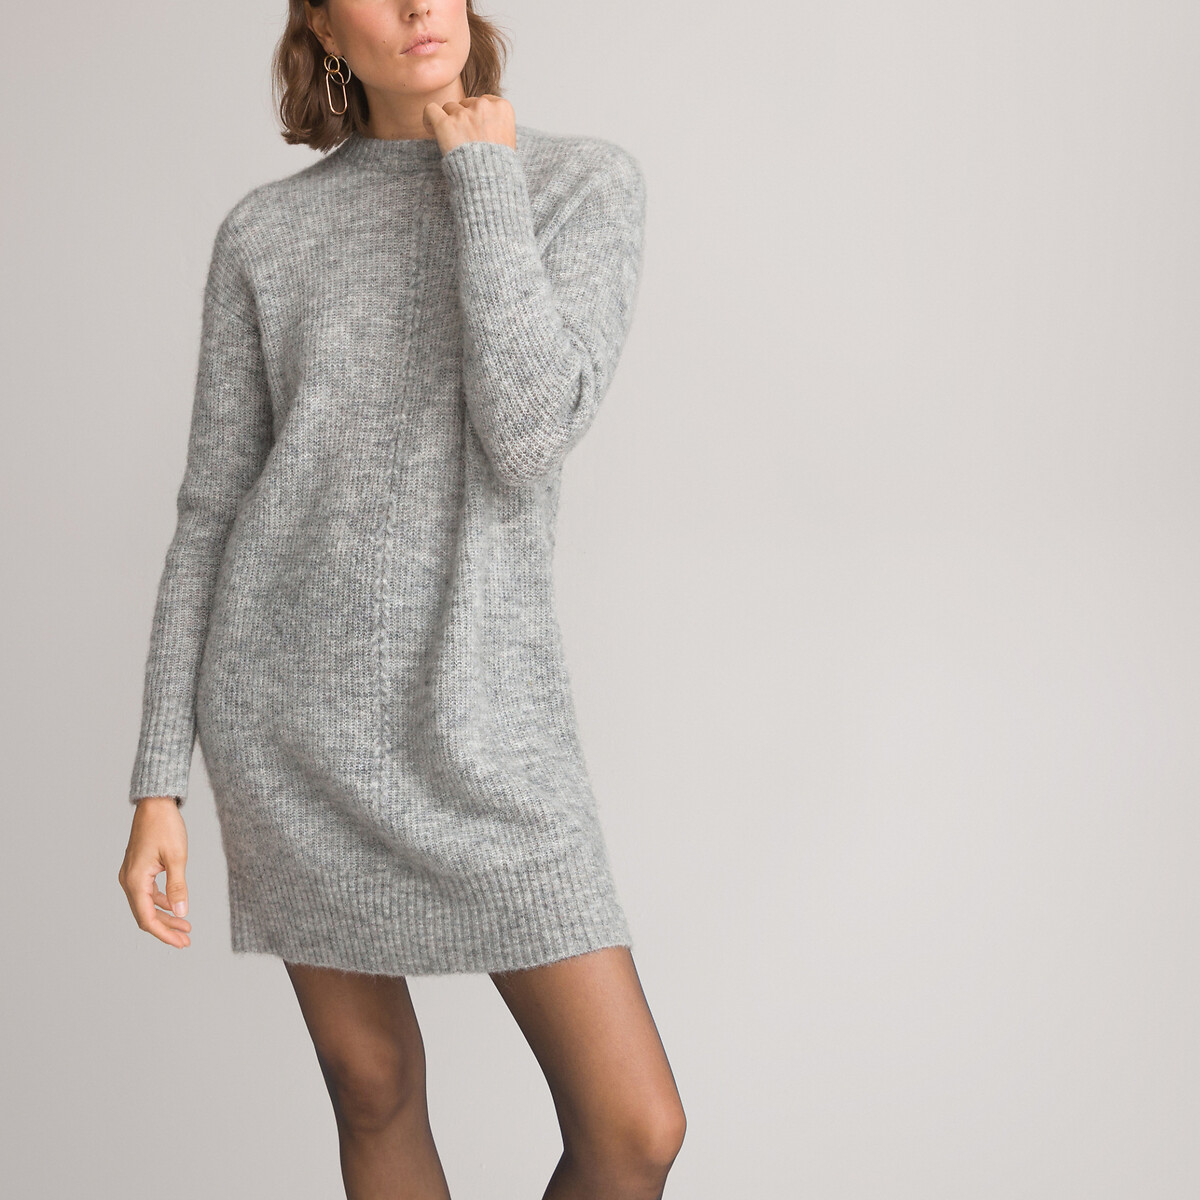 Платье-пуловер короткое длинные рукава из смешанной шерсти L серый платье пуловер короткое в полоску длинные рукава s черный